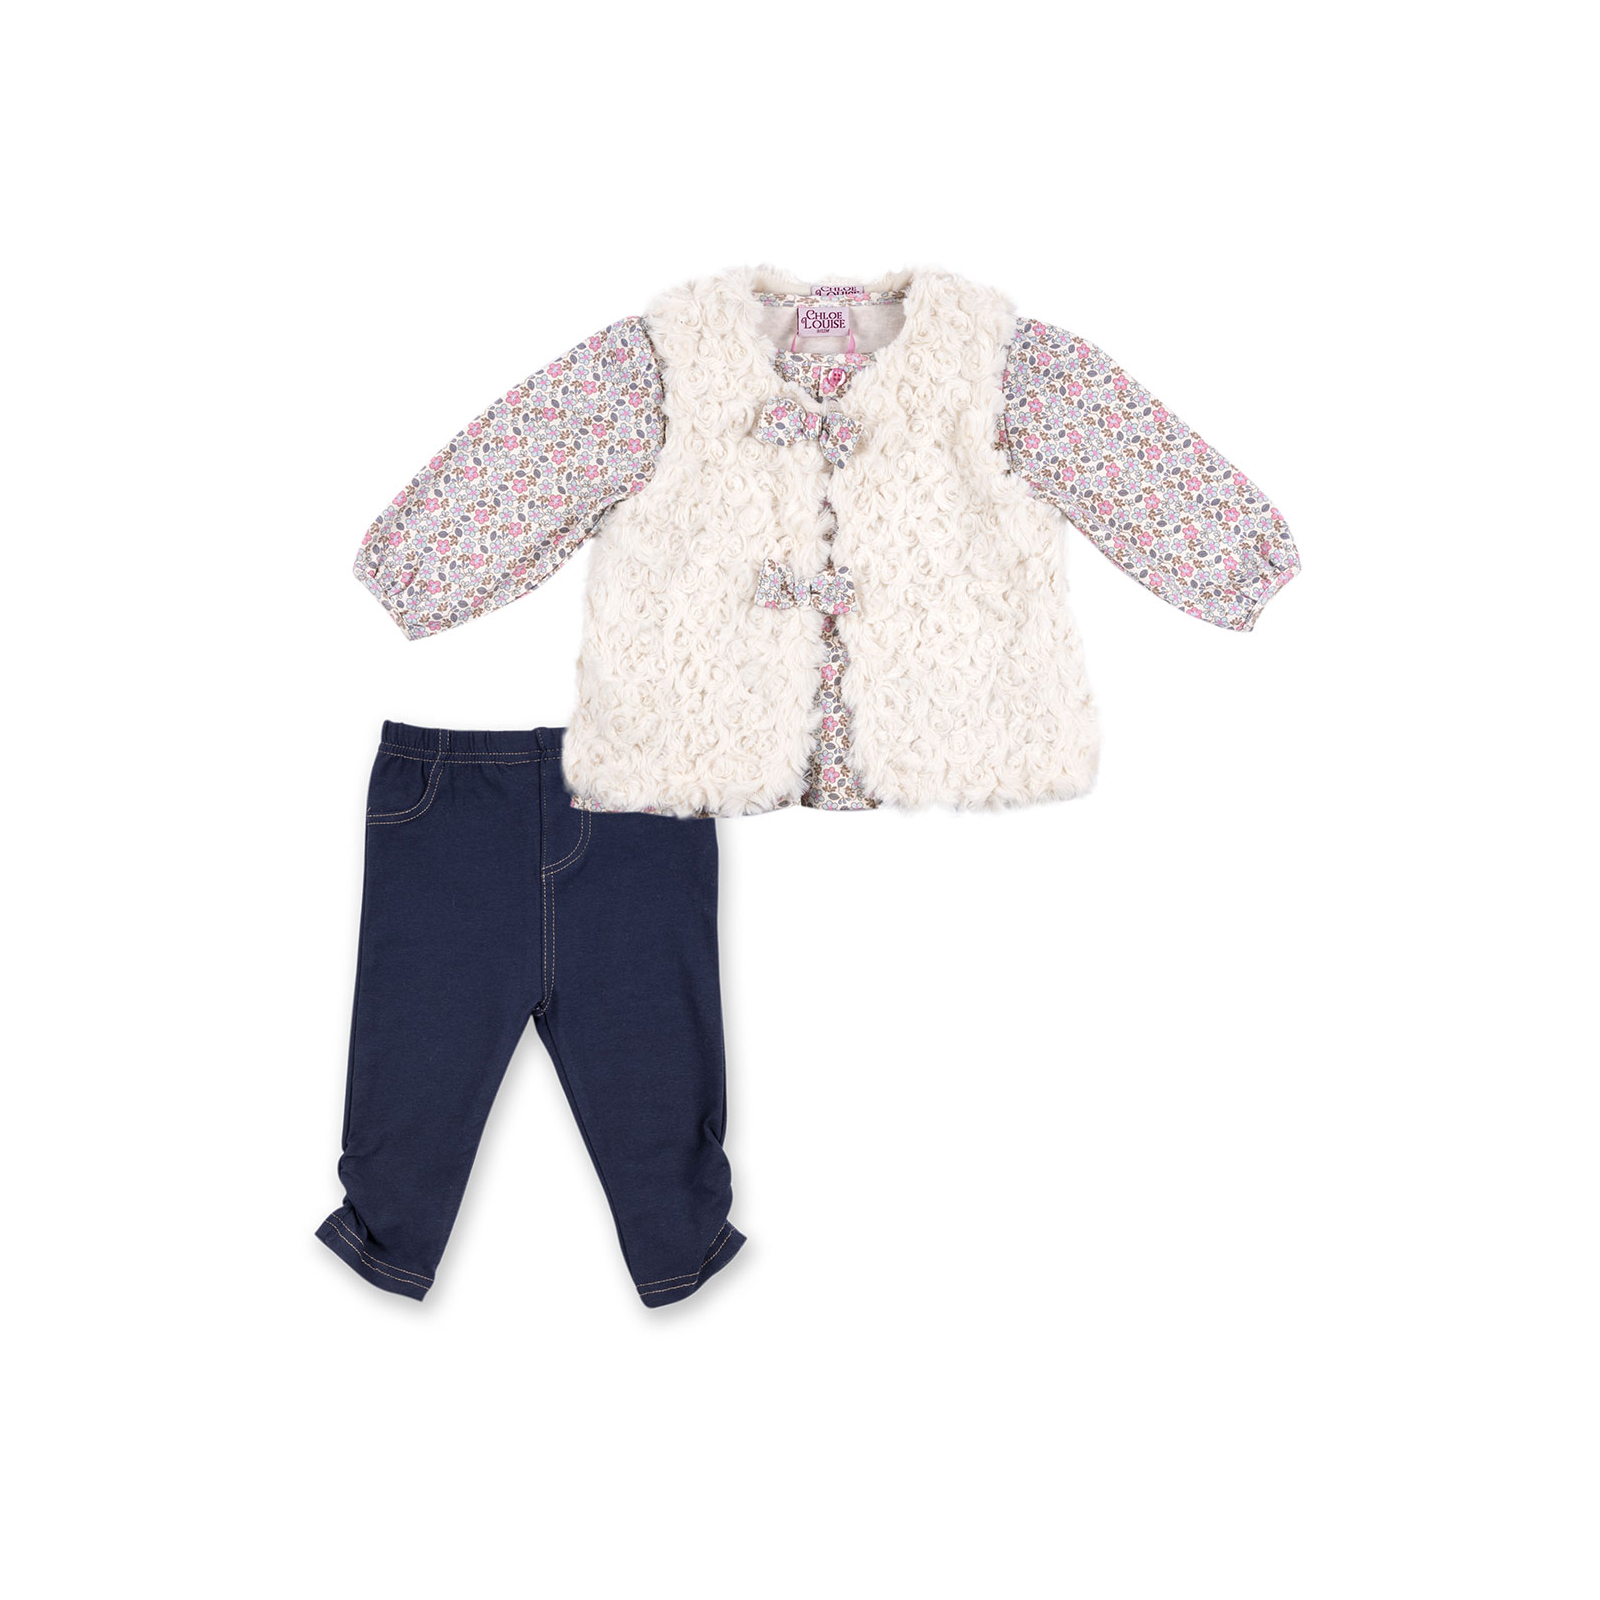 Набор детской одежды Luvena Fortuna для девочек: кофточка, штанишки и меховая жилетка (G8234.R.12-18)